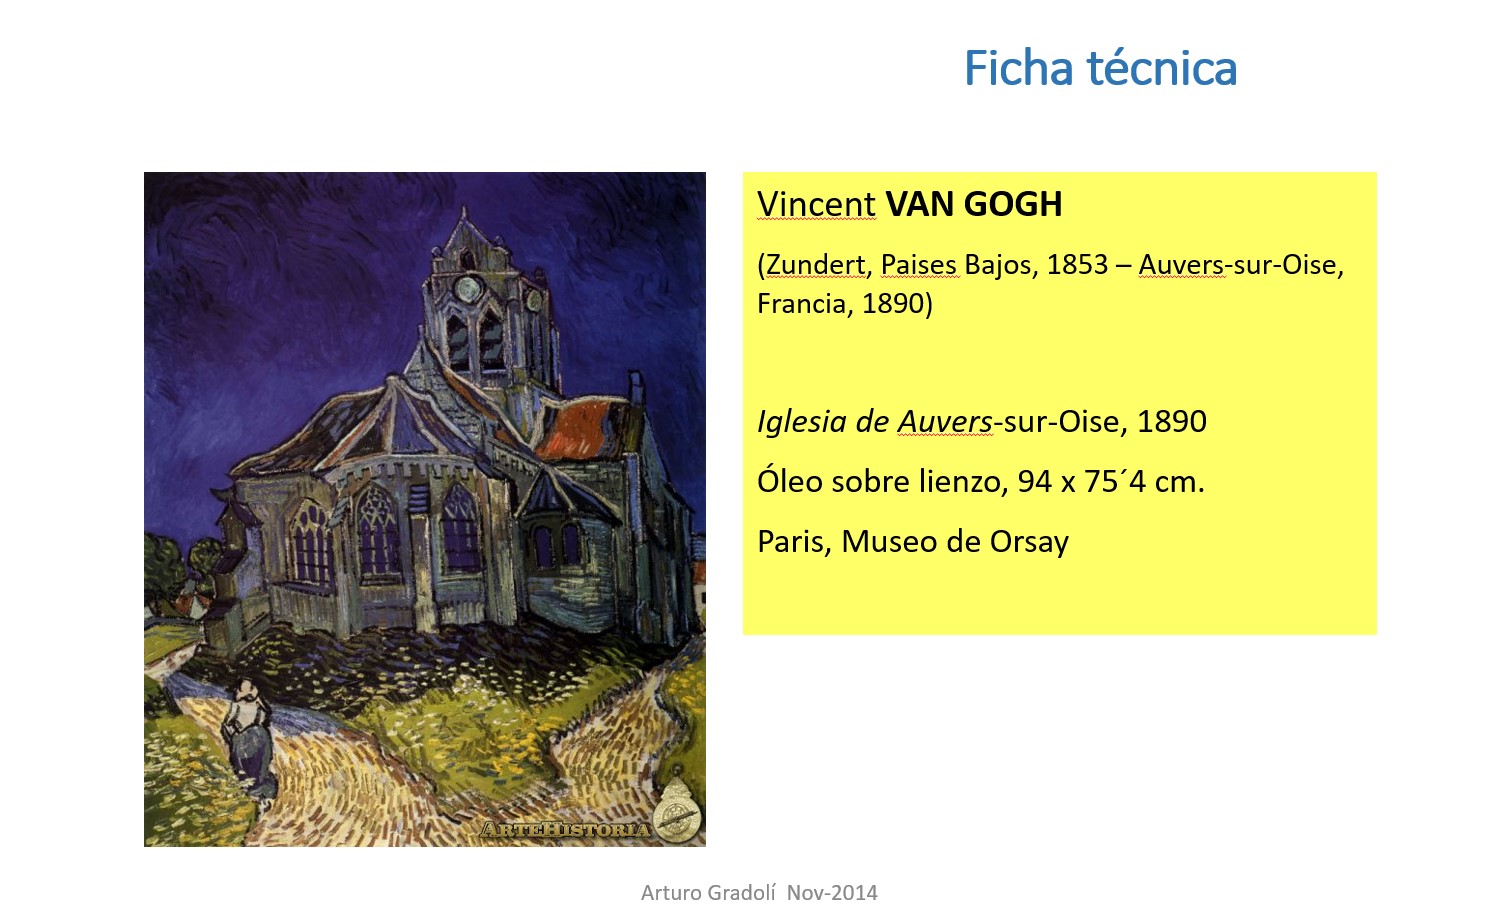 Arte y filosofía, Vincent van Gogh y Nietzsche | Neurofilosofía